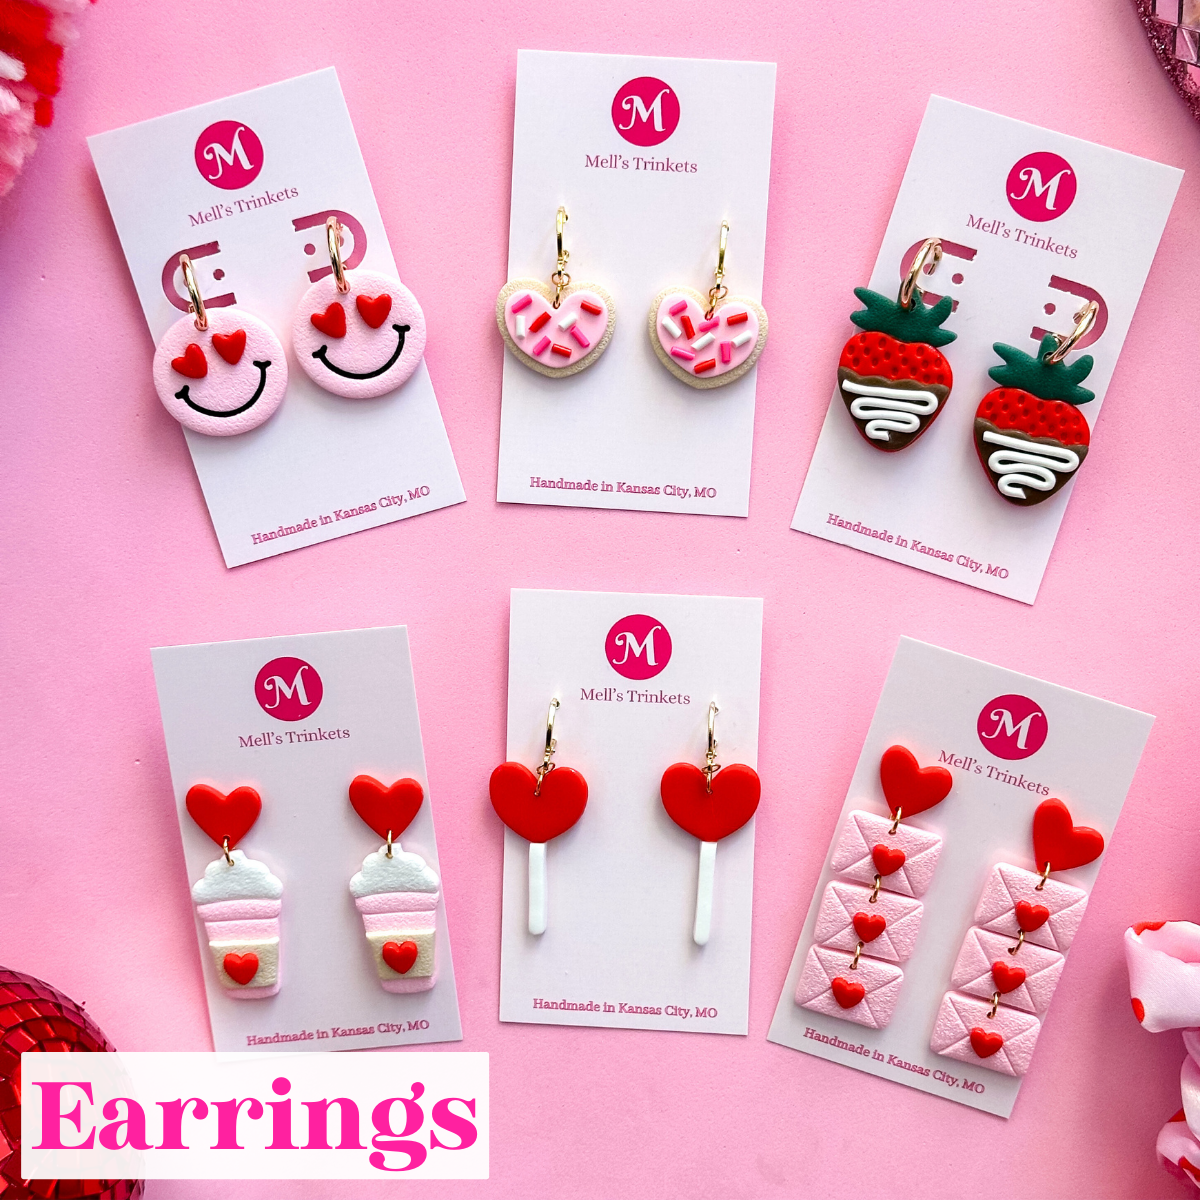 All earrings